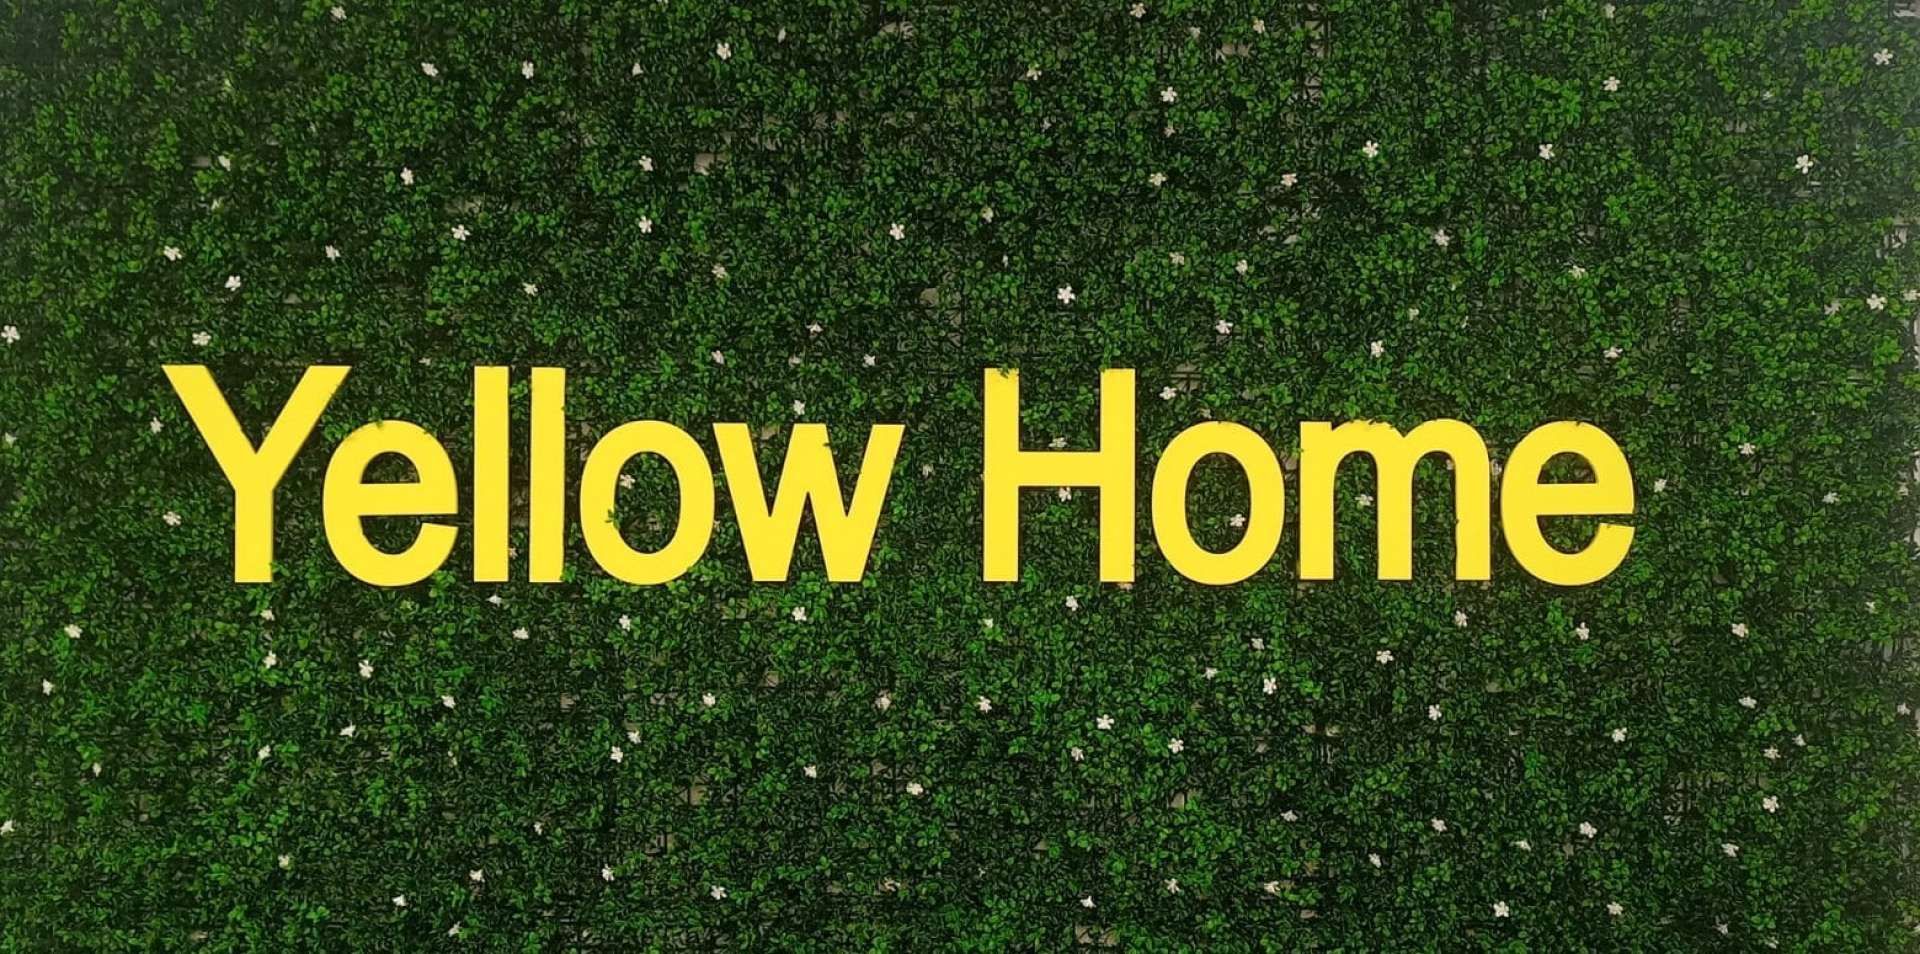 inmobiliaria yellow home